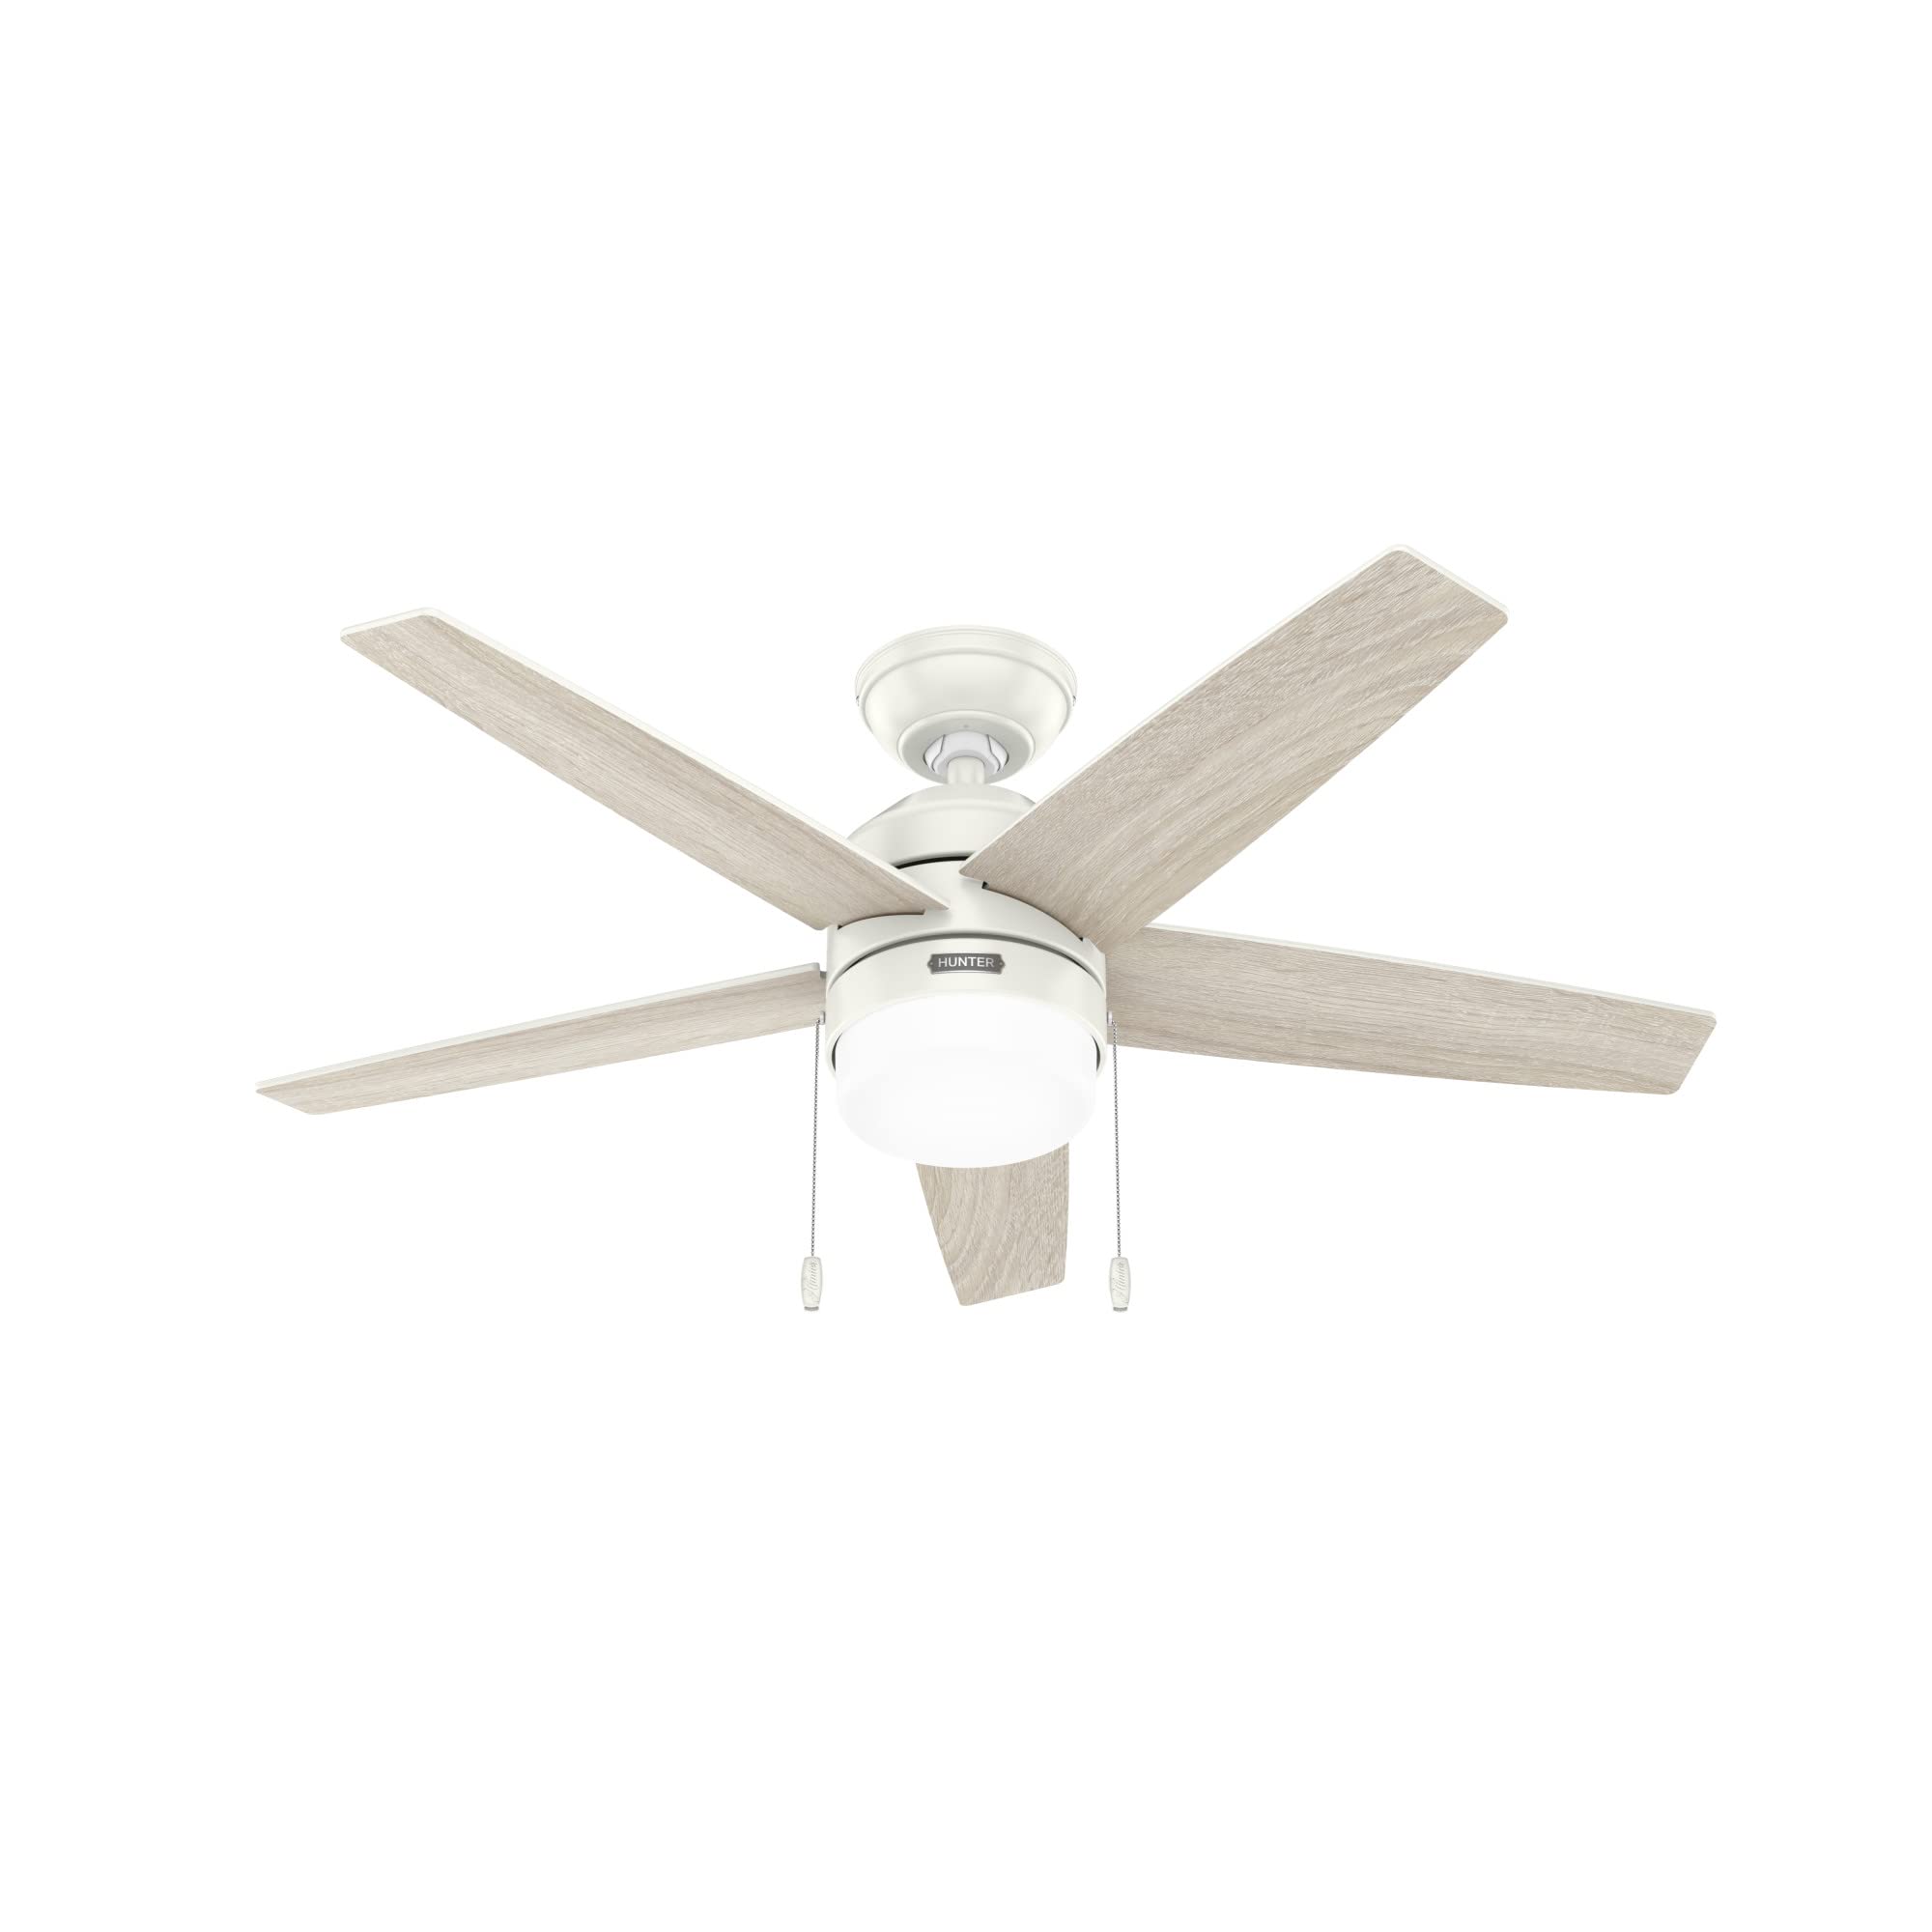 Hunter Fan Company 52494 Bardot Ceiling Fan, Fresh White